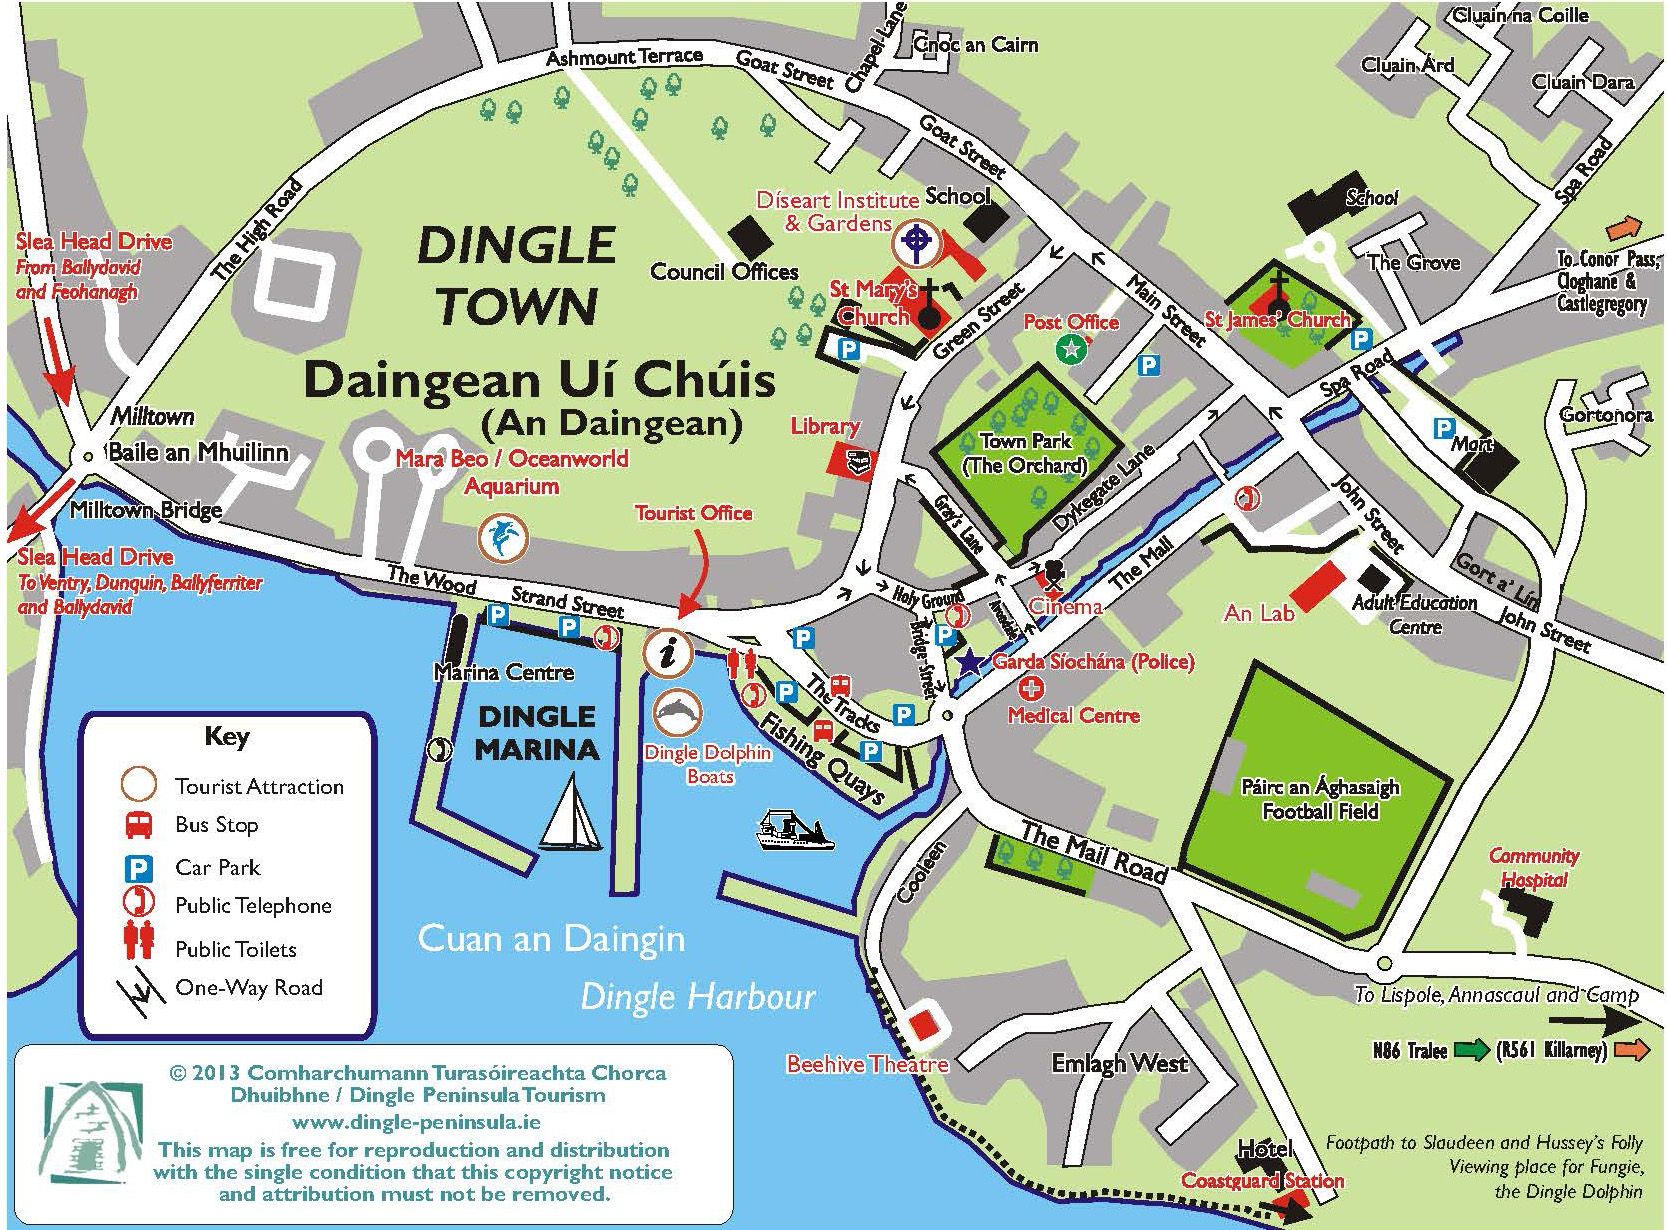 map of dingle town kerry dingle peninsula ireland